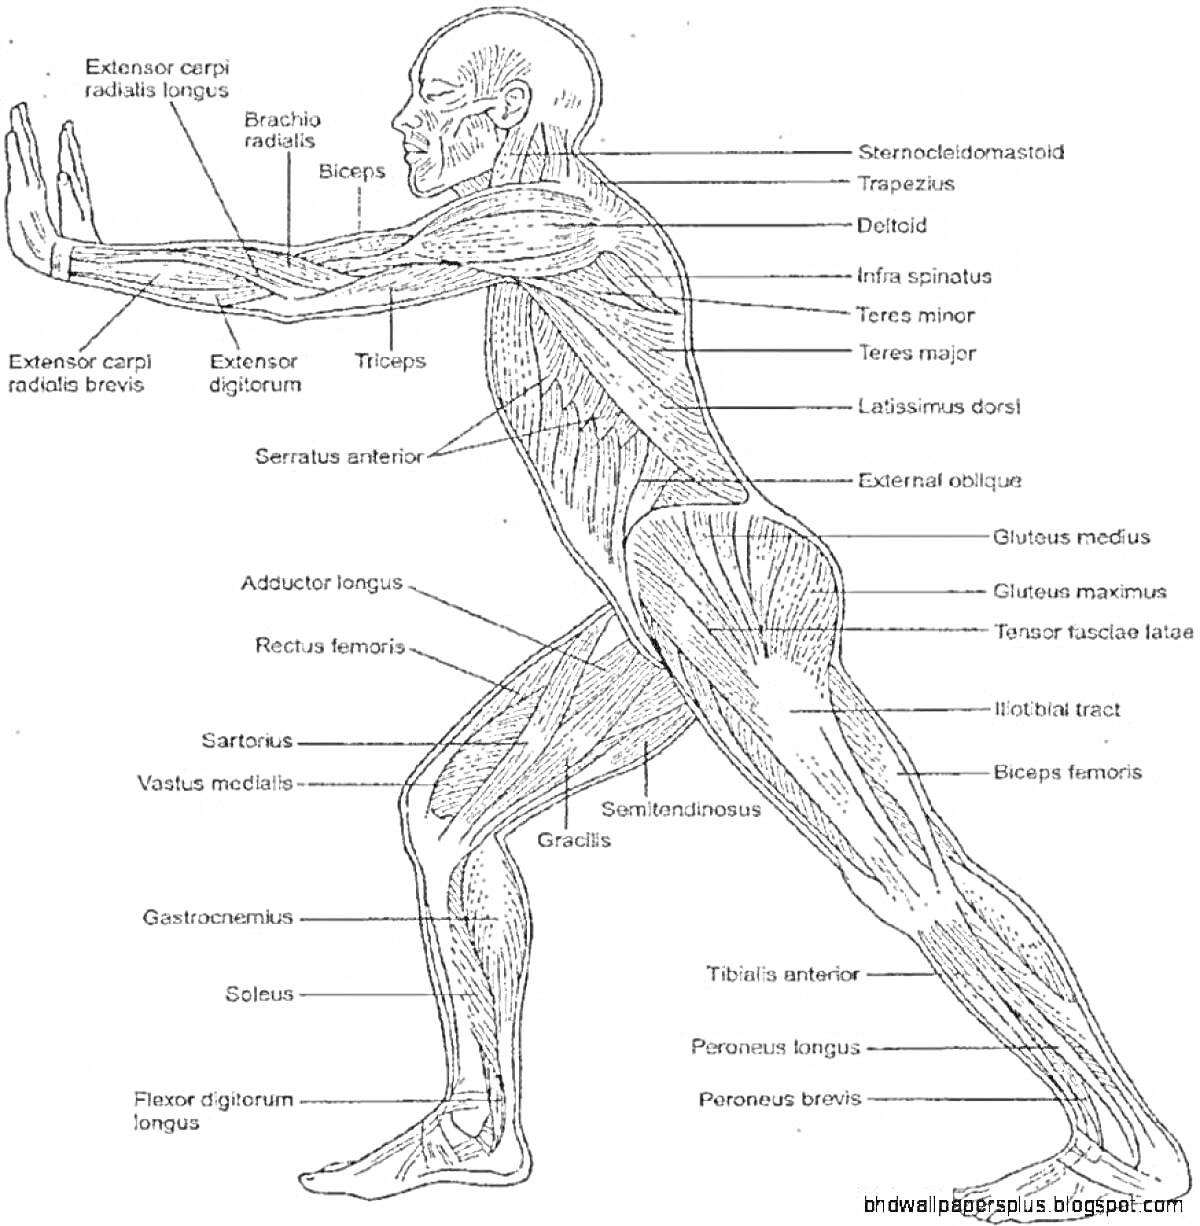 Раскраска Анатомический атлас йоги с обозначением мышц